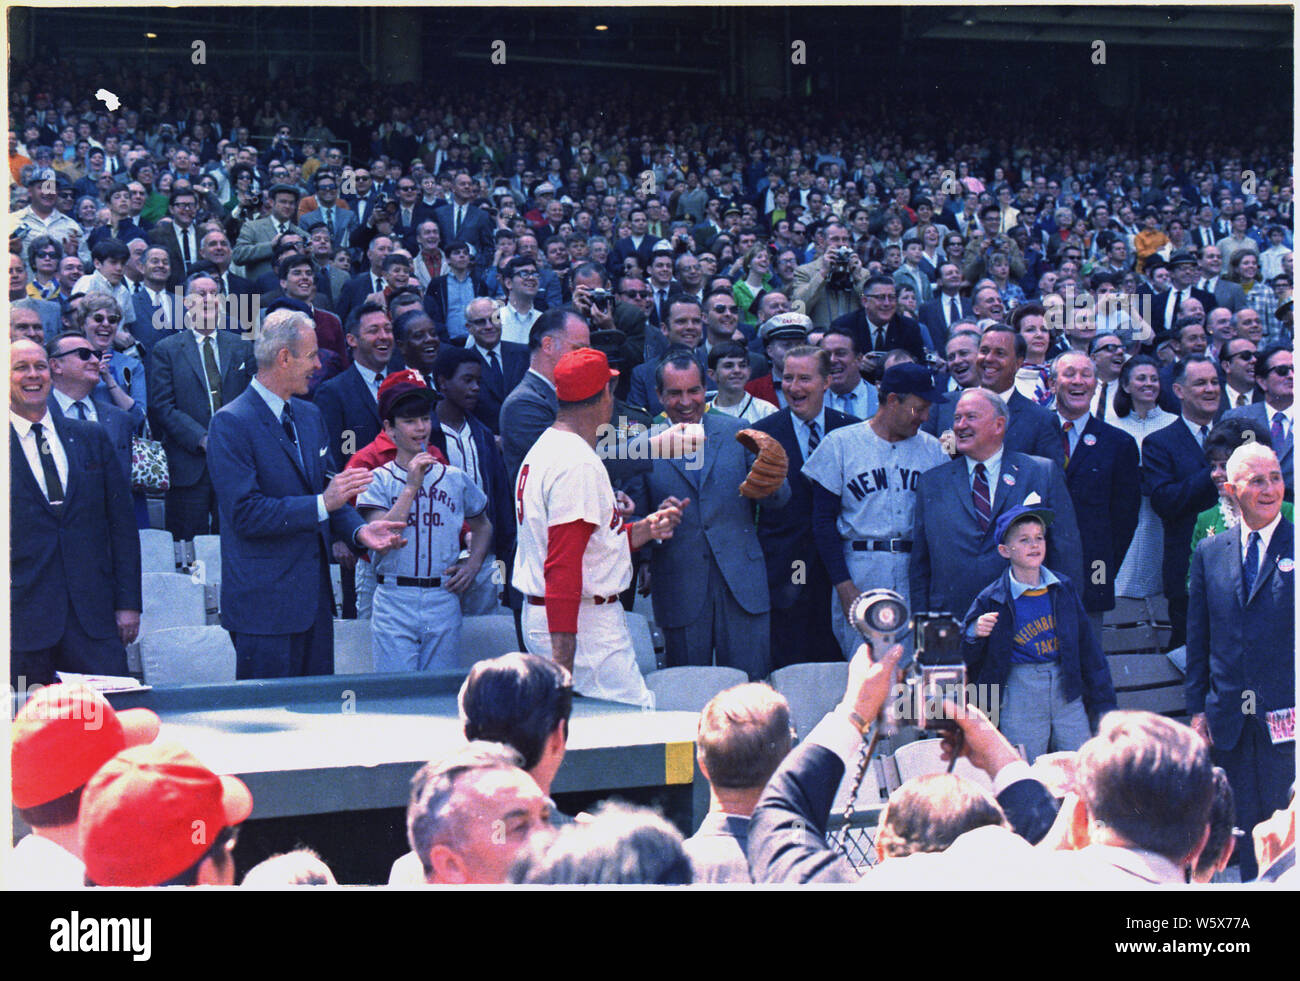 Präsident Nixon heraus werfen die erste Kugel am Eröffnungstag der 1969 Baseball Saison zwischen dem Washington Senatoren und die New York Yankees; Umfang und Inhalt: Im Bild: Ted Williams, Manager des Washington Senatoren, Präsident Nixon,, Manager der New York Yankees. Betrifft: Sport. Stockfoto